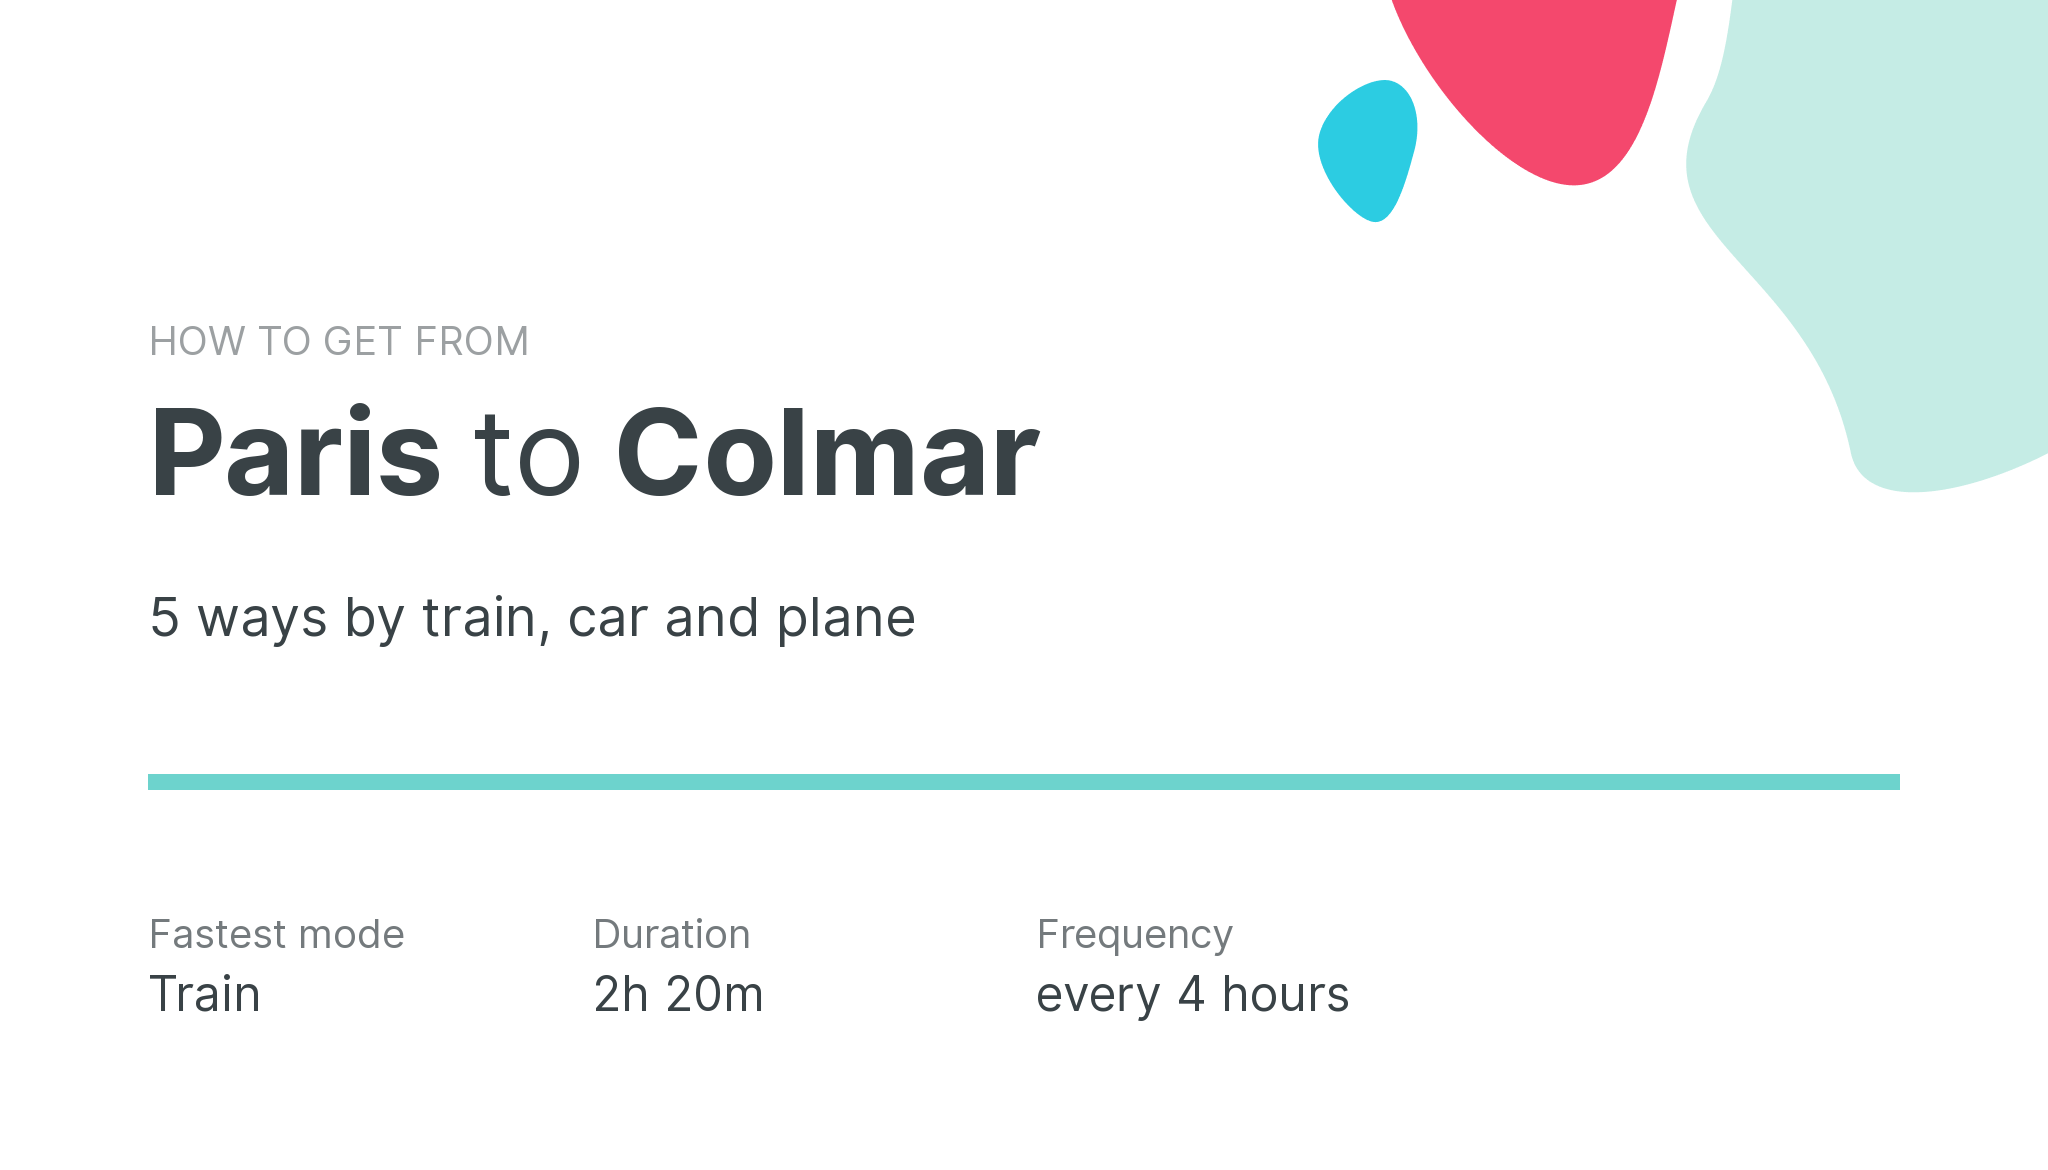 How do I get from Paris to Colmar